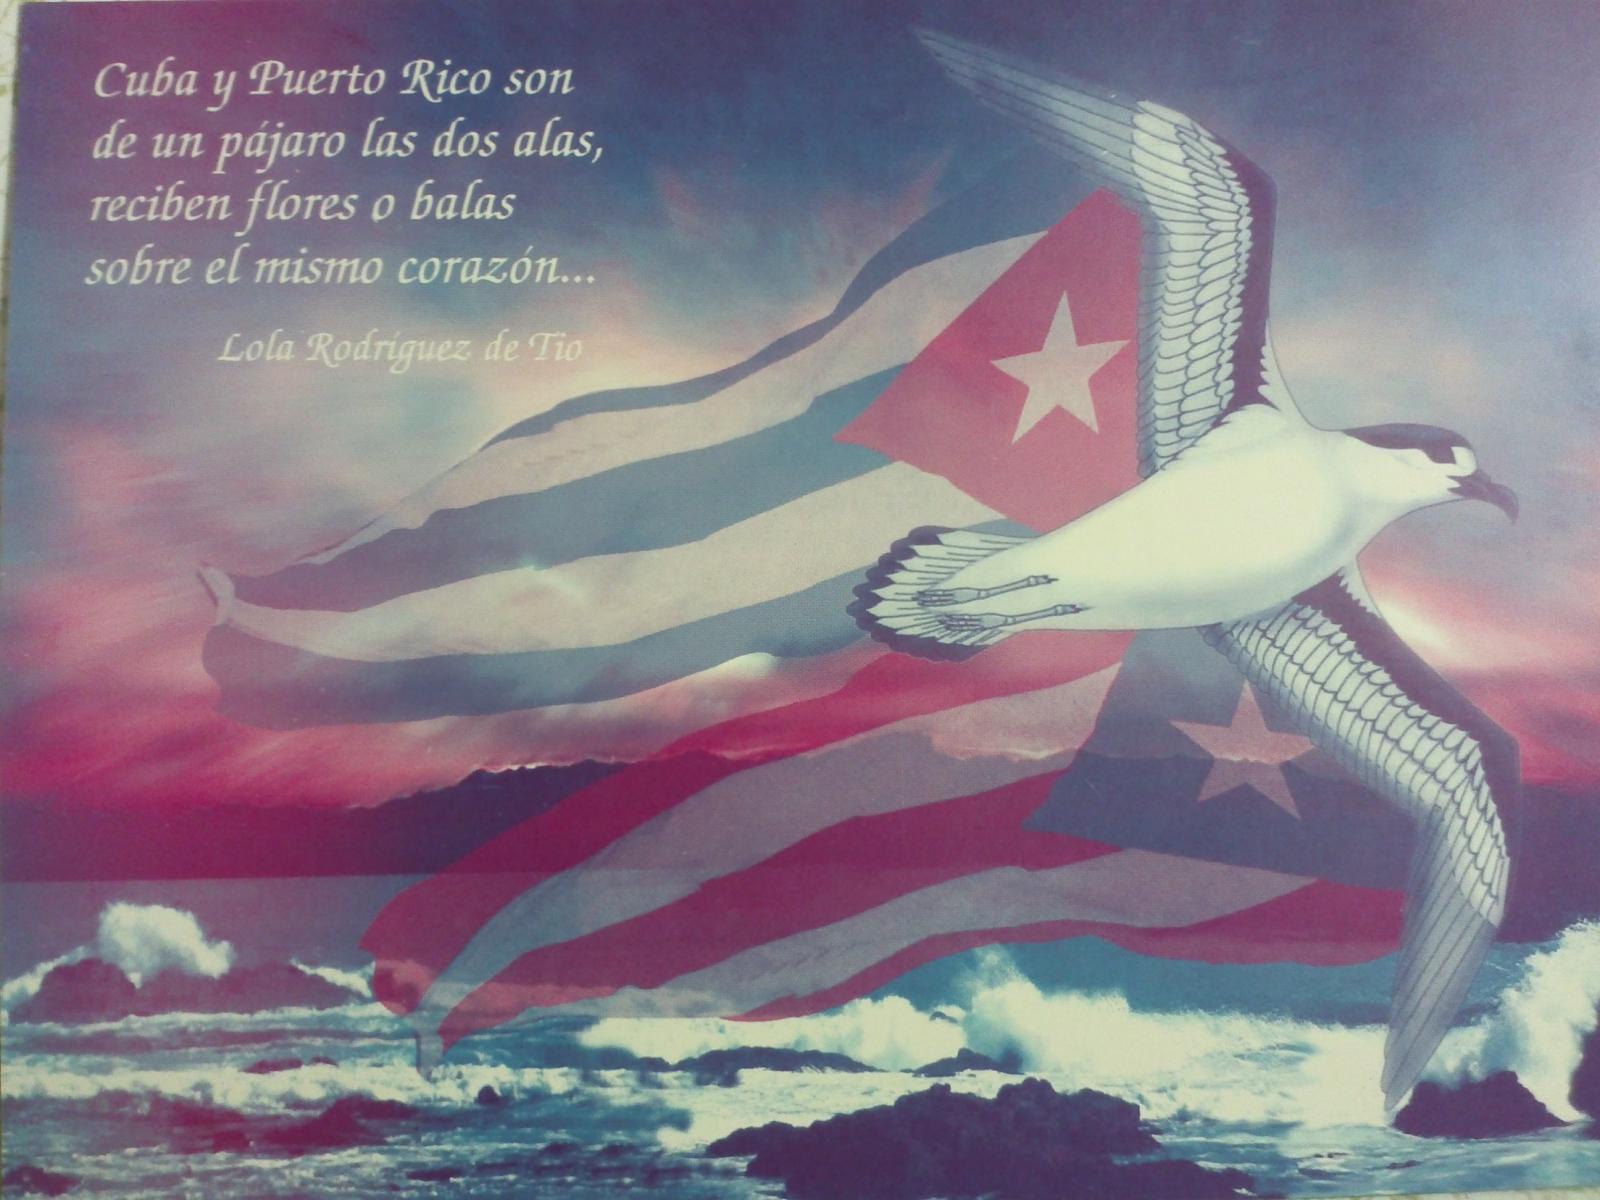 Cuba y Puerto Rico, las dos alas de un pájaro